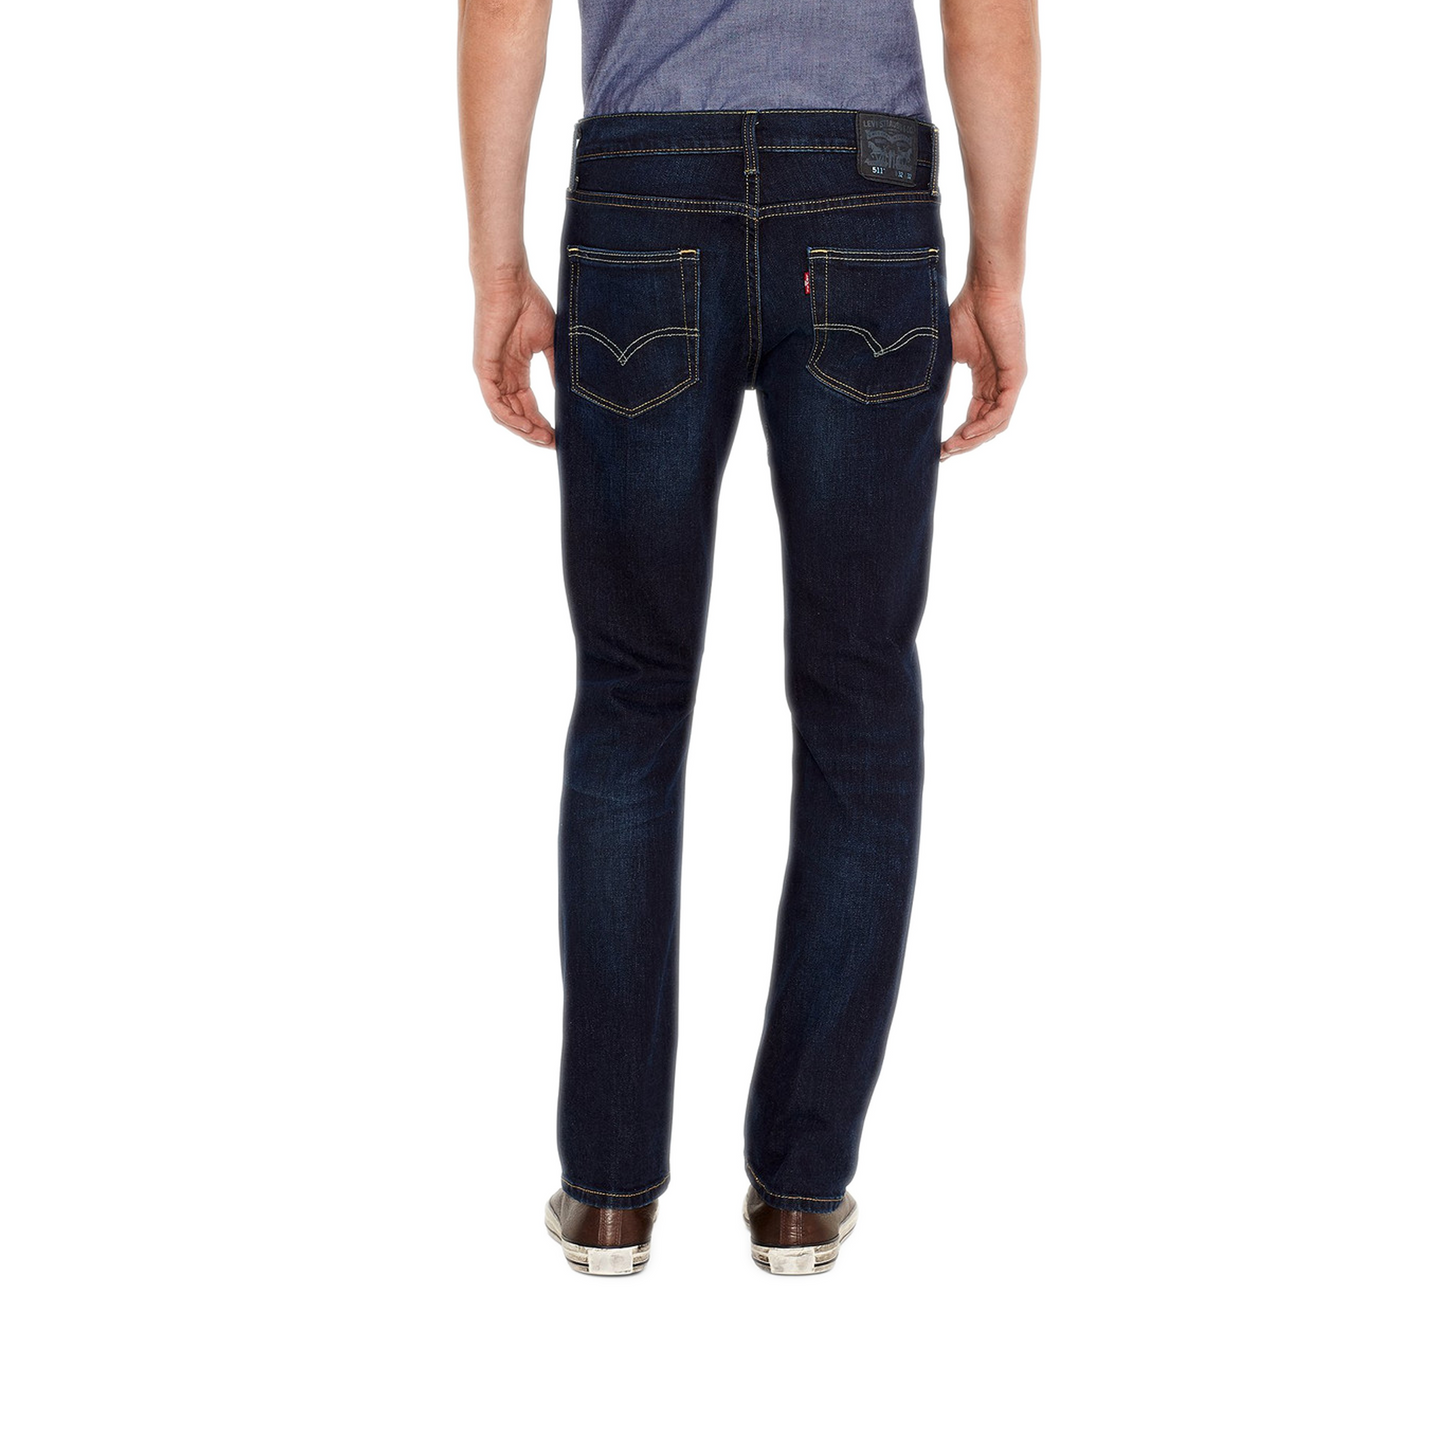 Men's Levi's 511 Slim Fit Jeans - Sequoia Stonewash